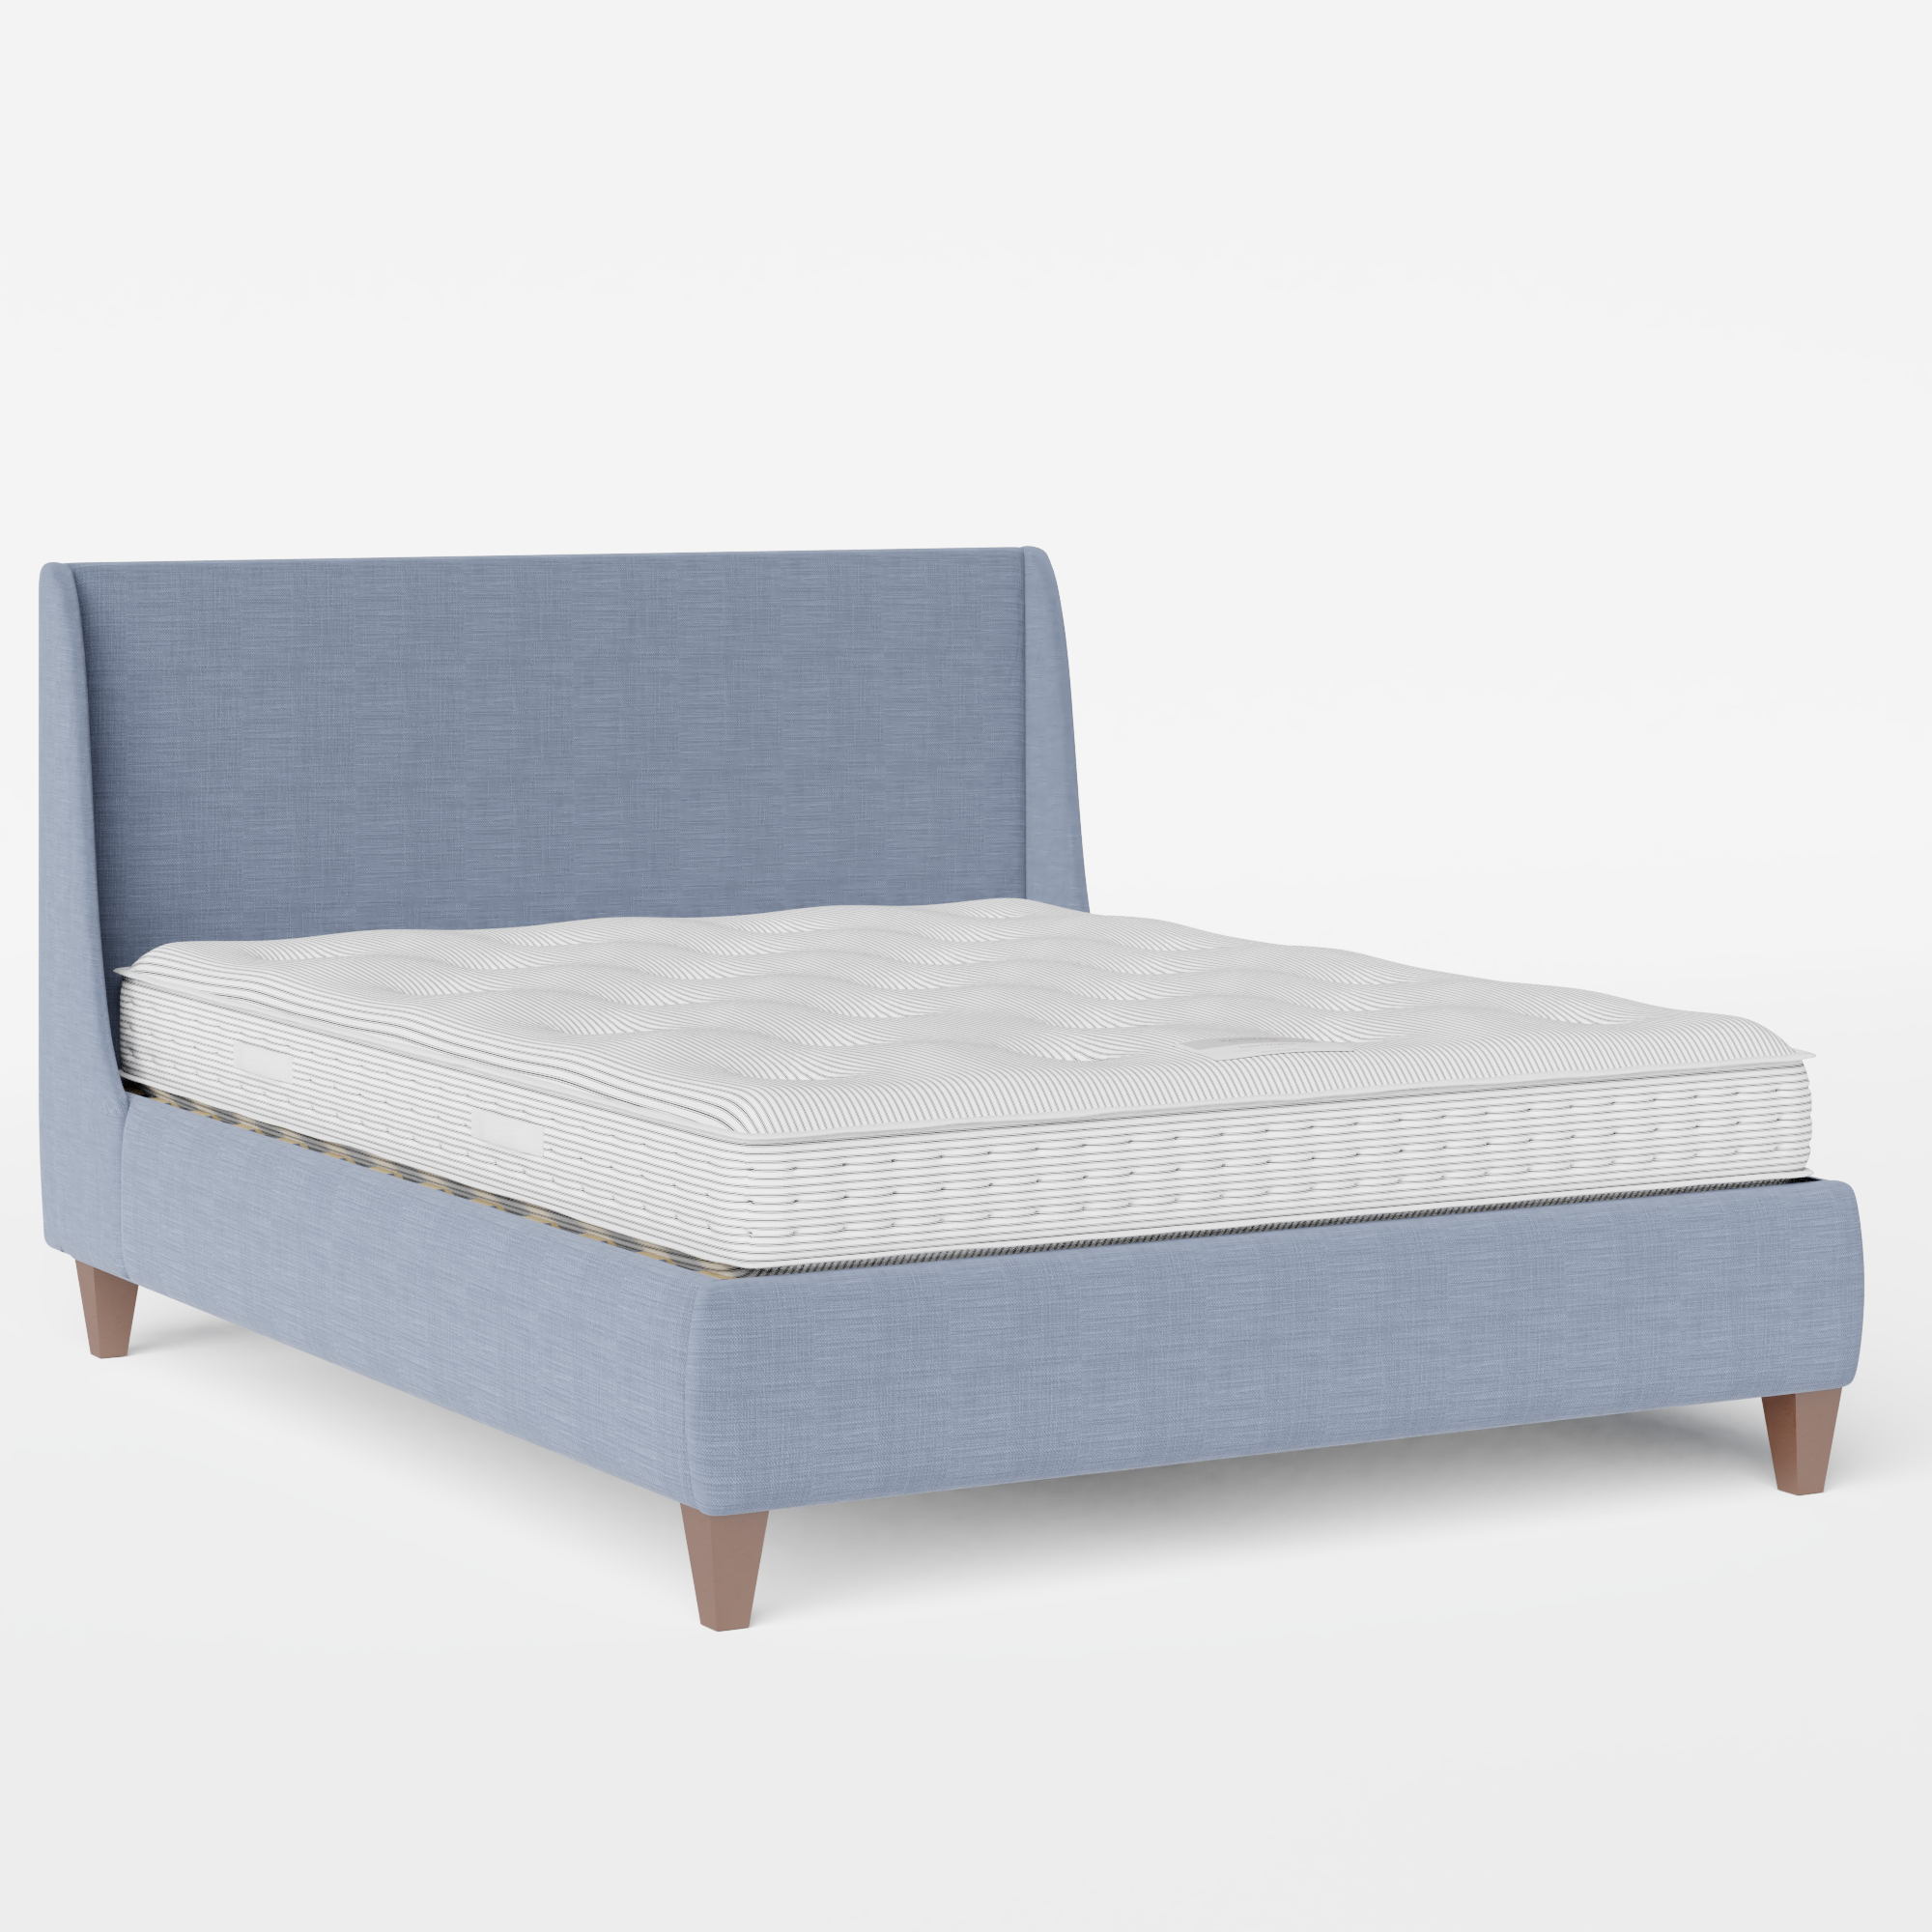 Sunderland cama tapizada en tela azul